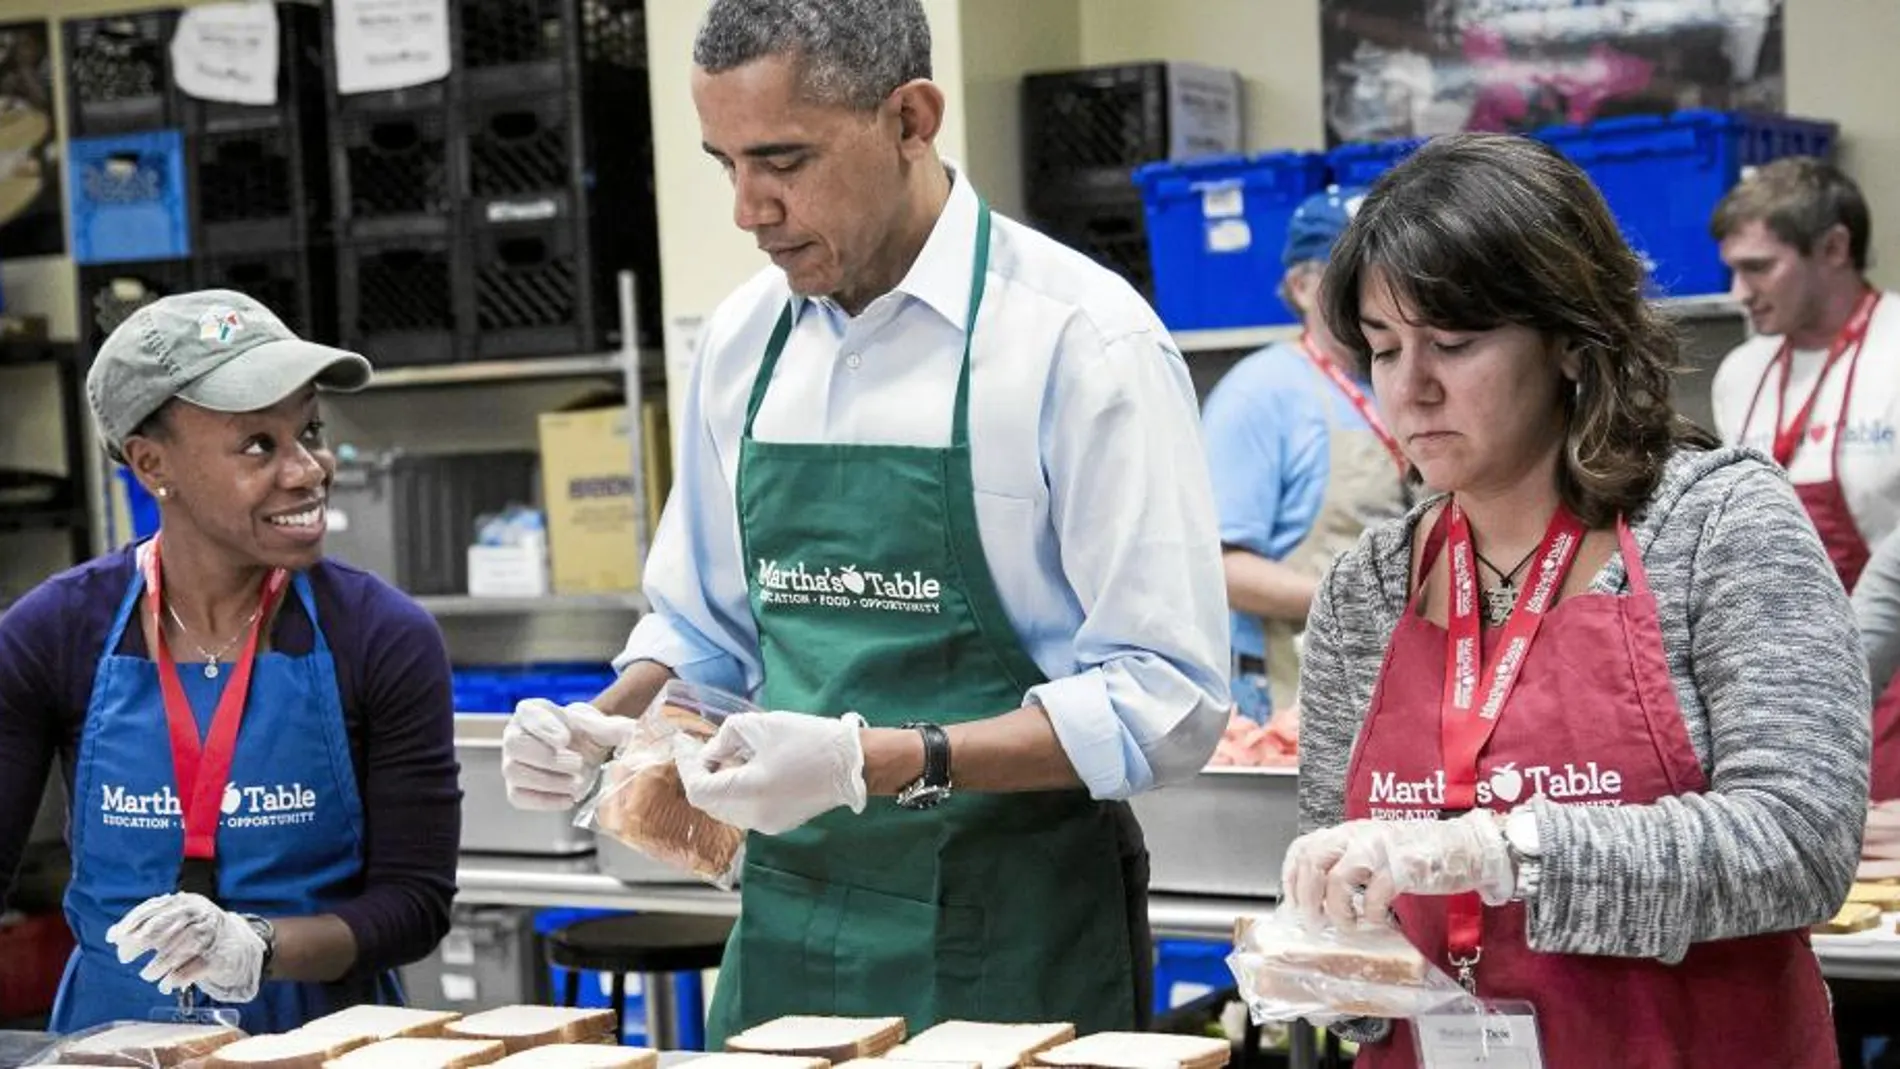 El presidente de Estados Unidos estuvo ayer con los voluntarios de Martha's Table, que atiende a las familias en apuros, entre ellas las afectadas por el apagón federal